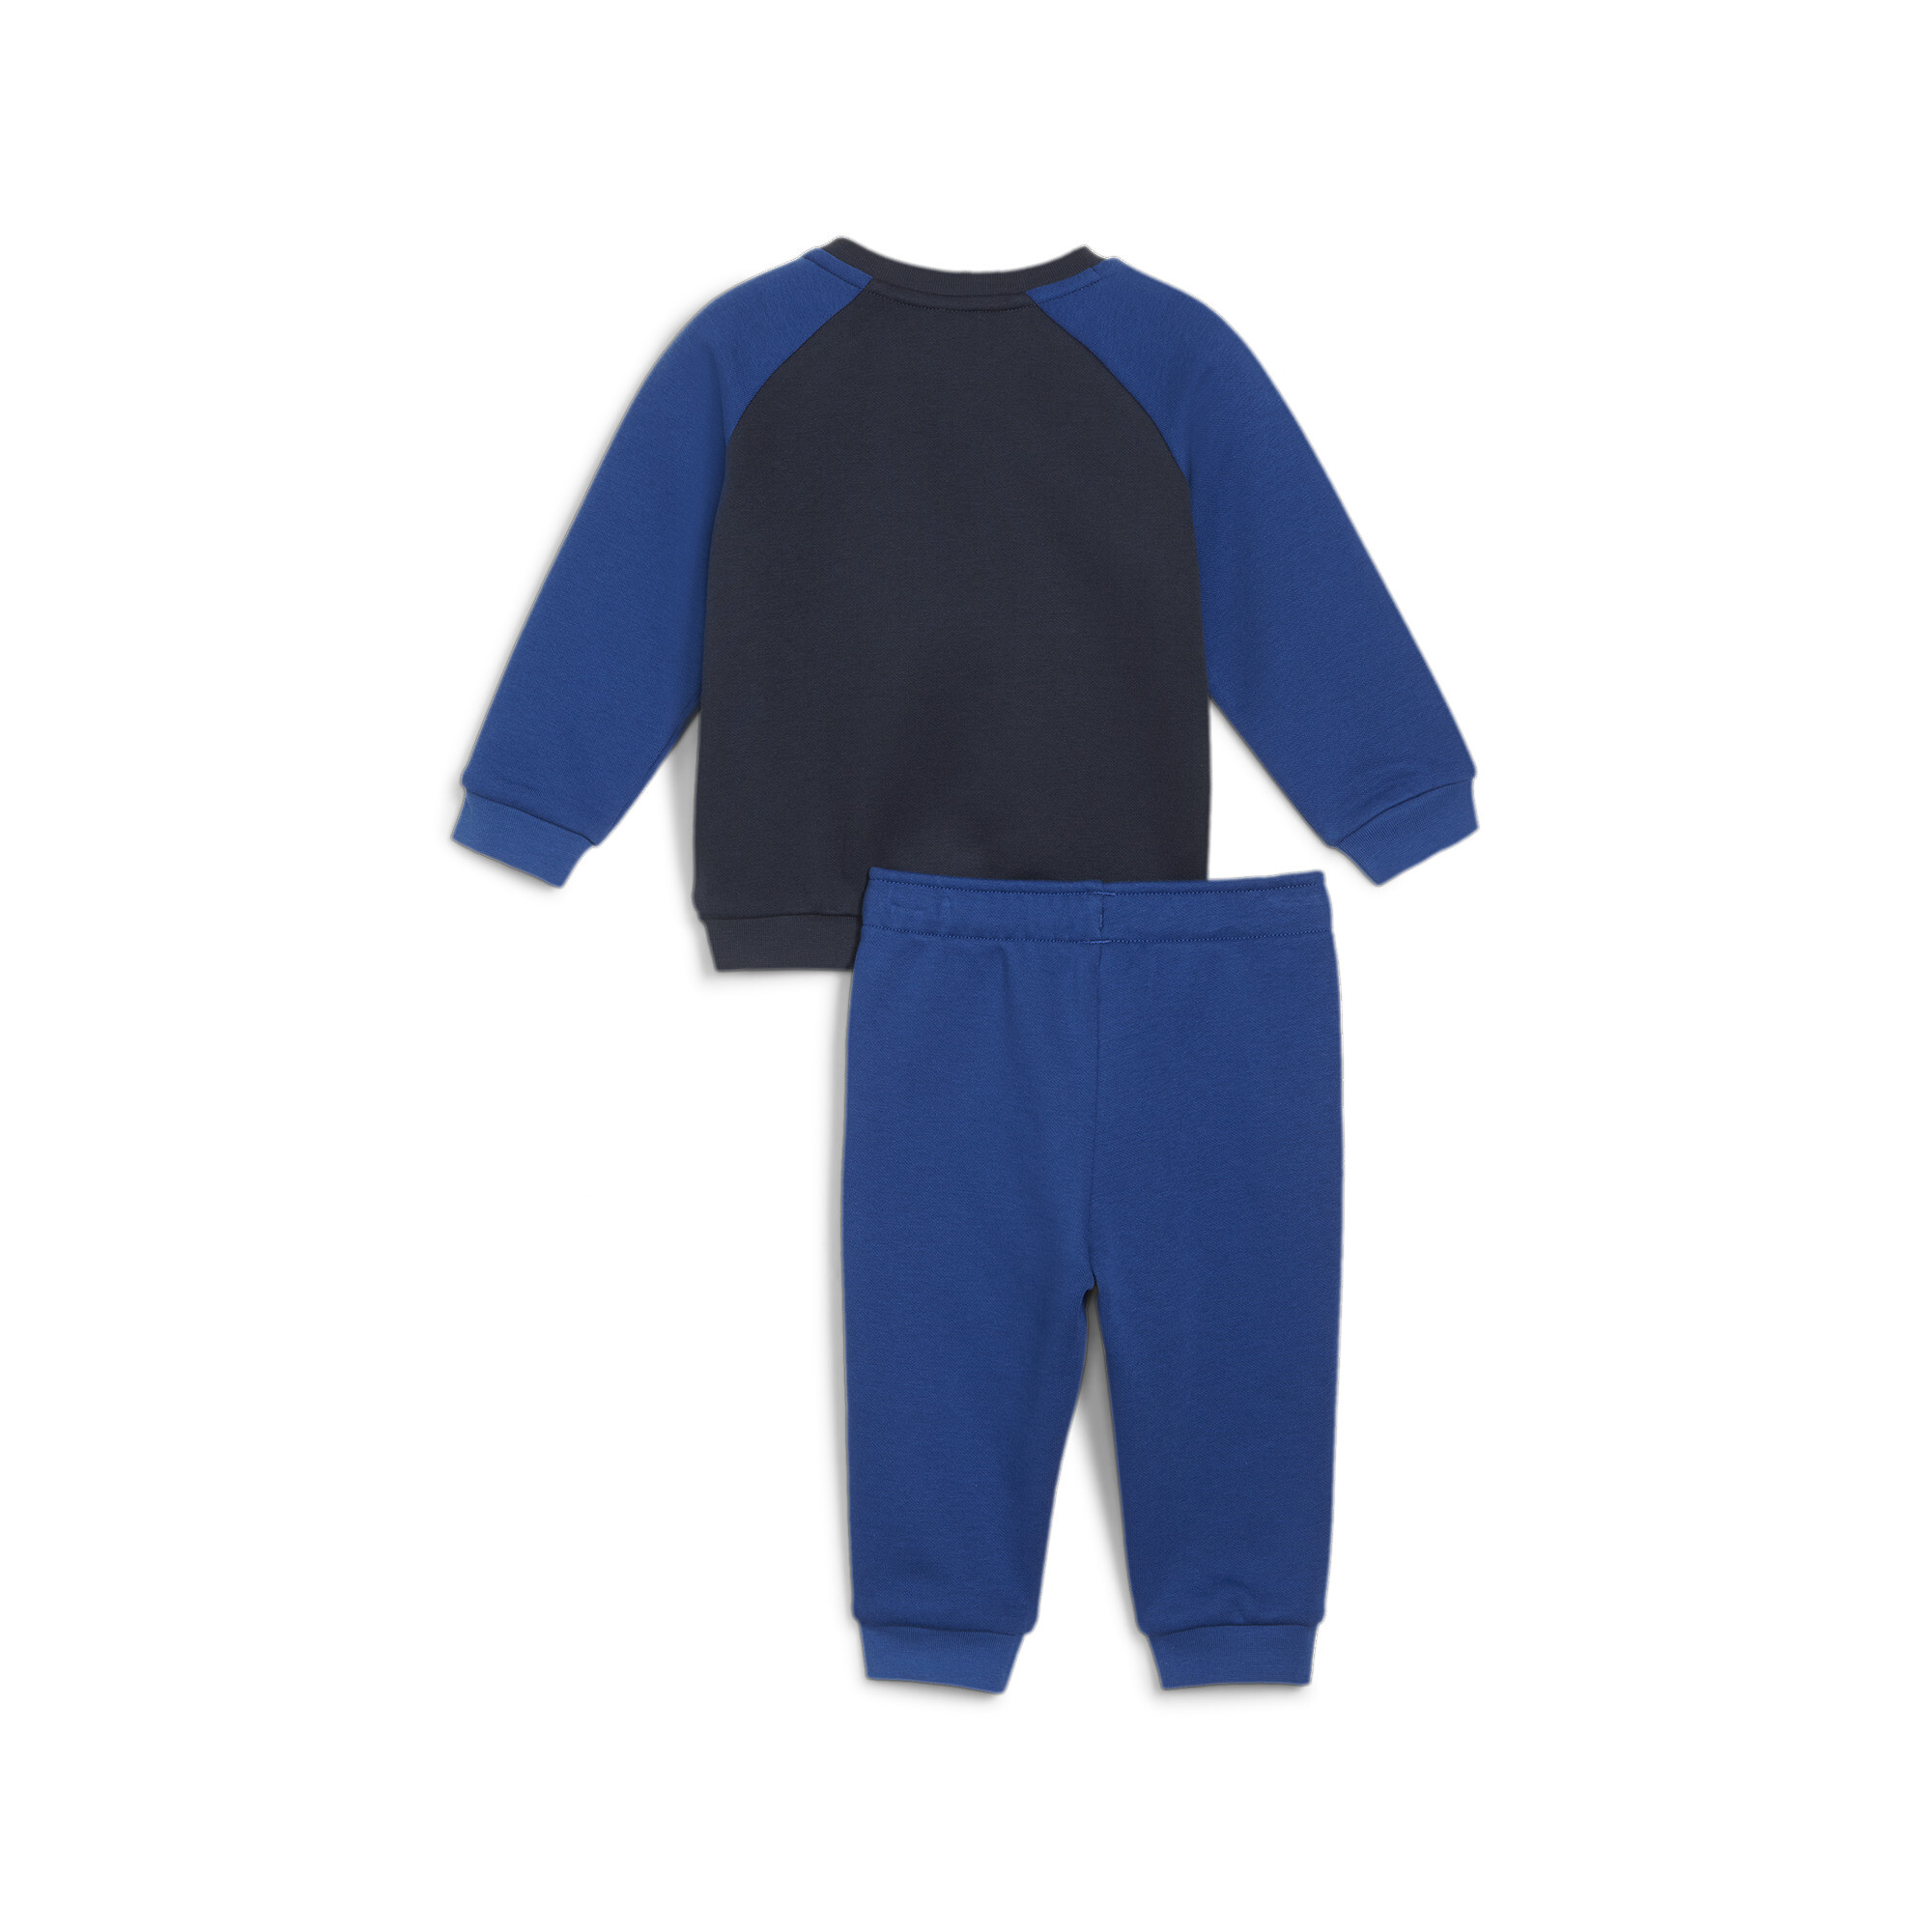 Puma Minicats Essentials Raglan Babies' Jogger Set, Blue, Size 4-6M, Clothing